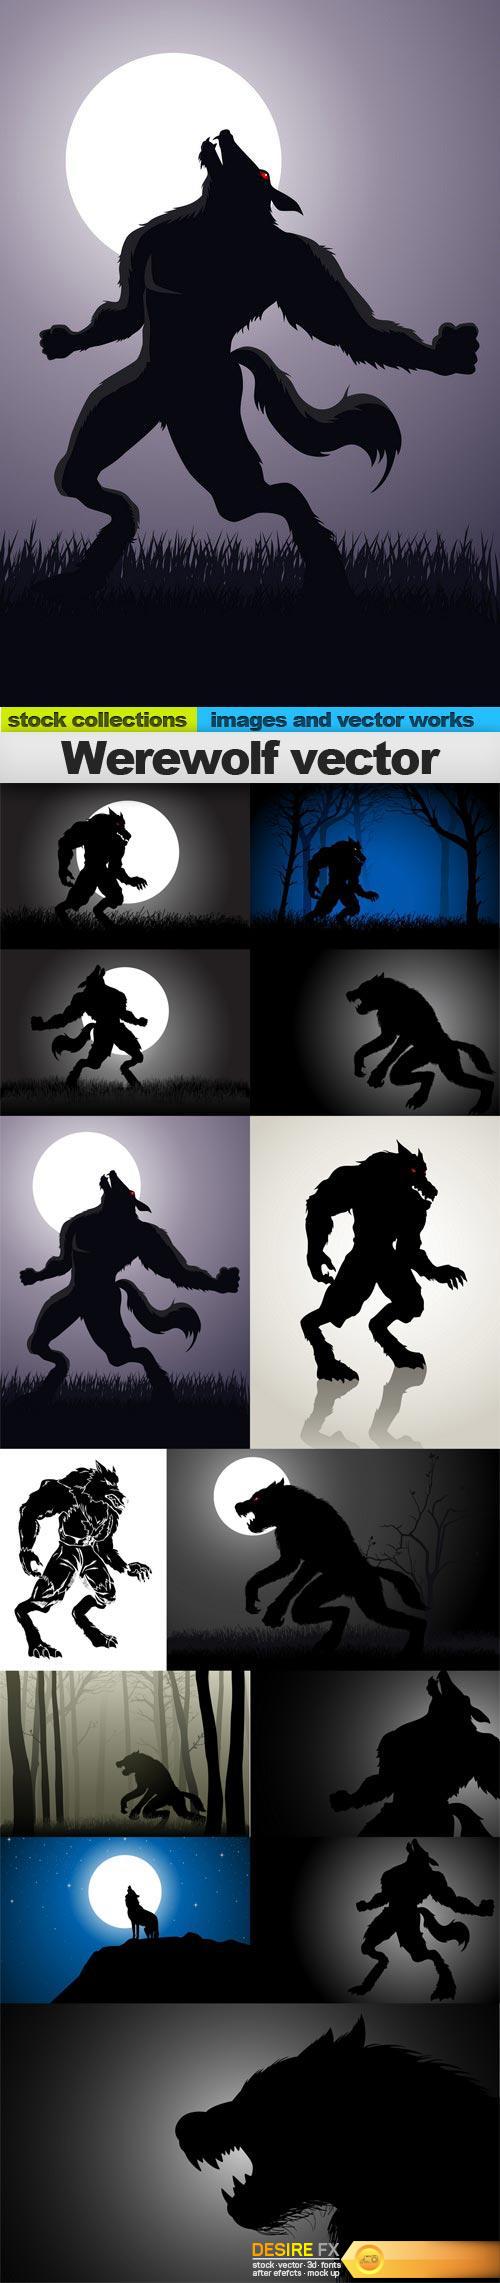 Werewolf vector, 15 x EPS